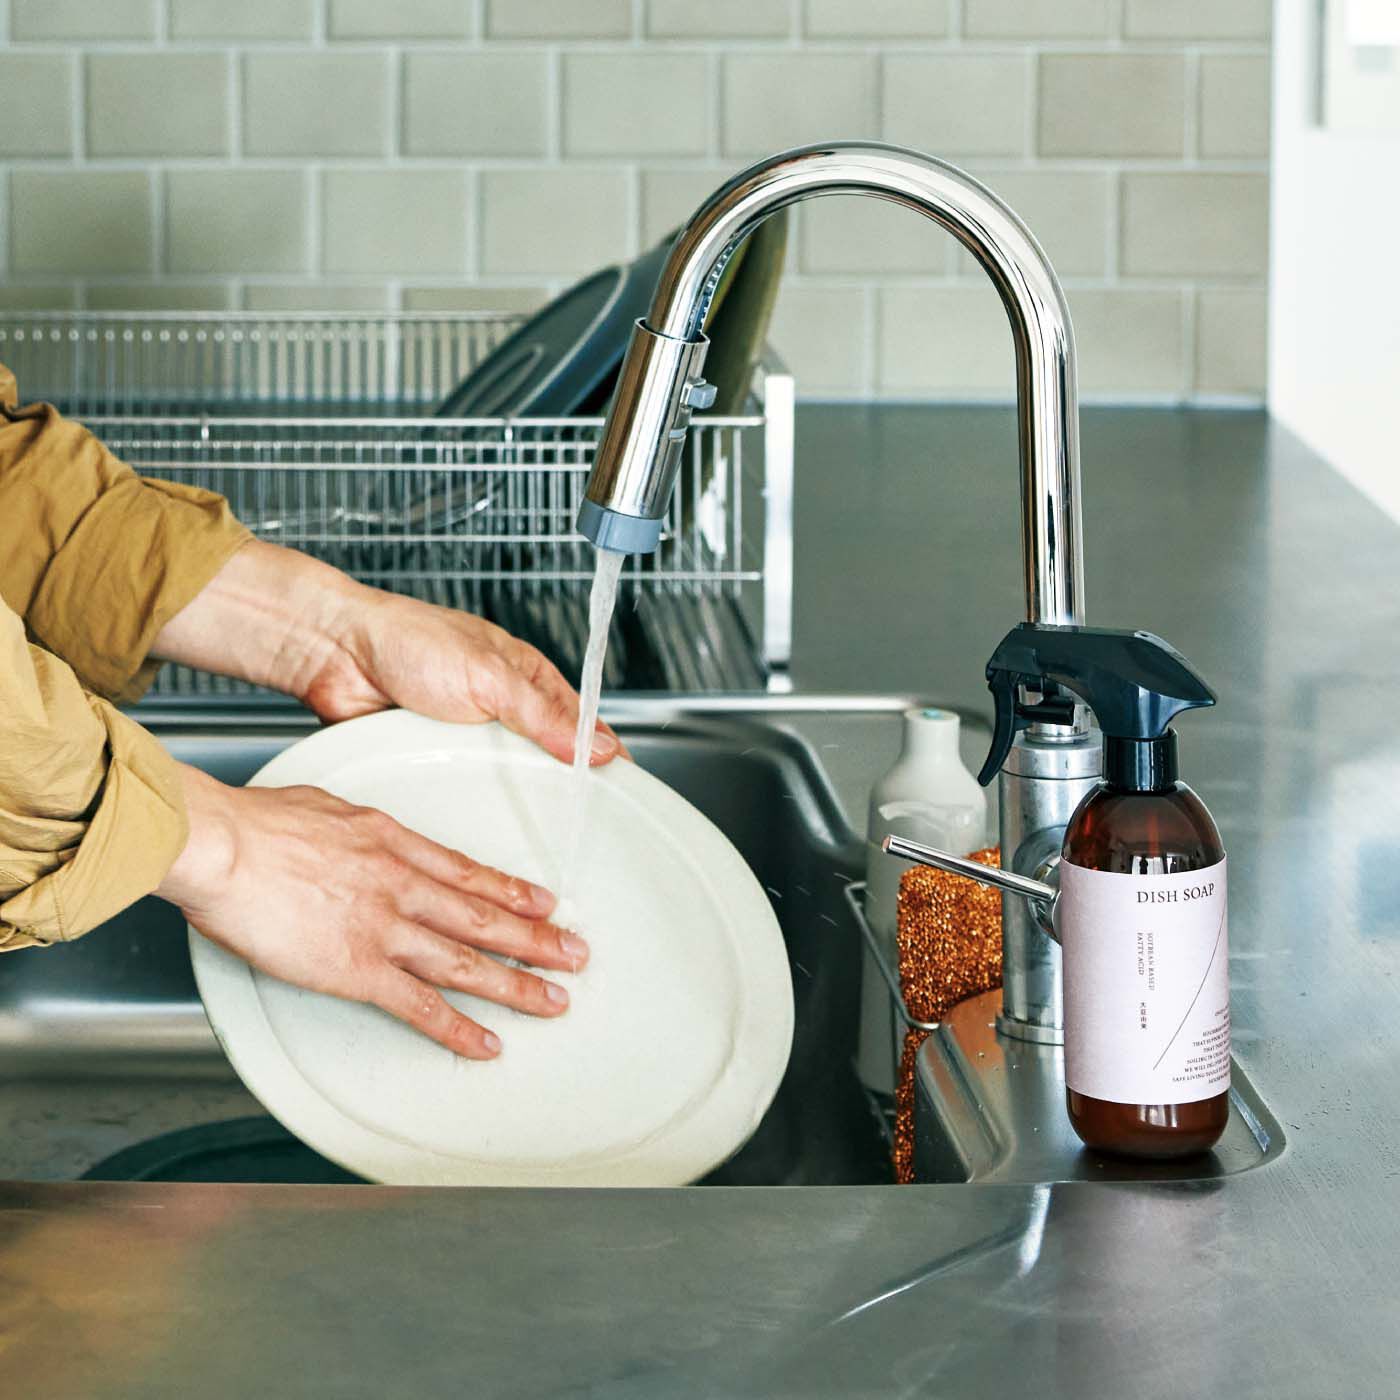 フェリシモの雑貨 Kraso|1/d DISH SOAP 食器用洗剤の会|キッチンになじむディスペンサーのデザイン。